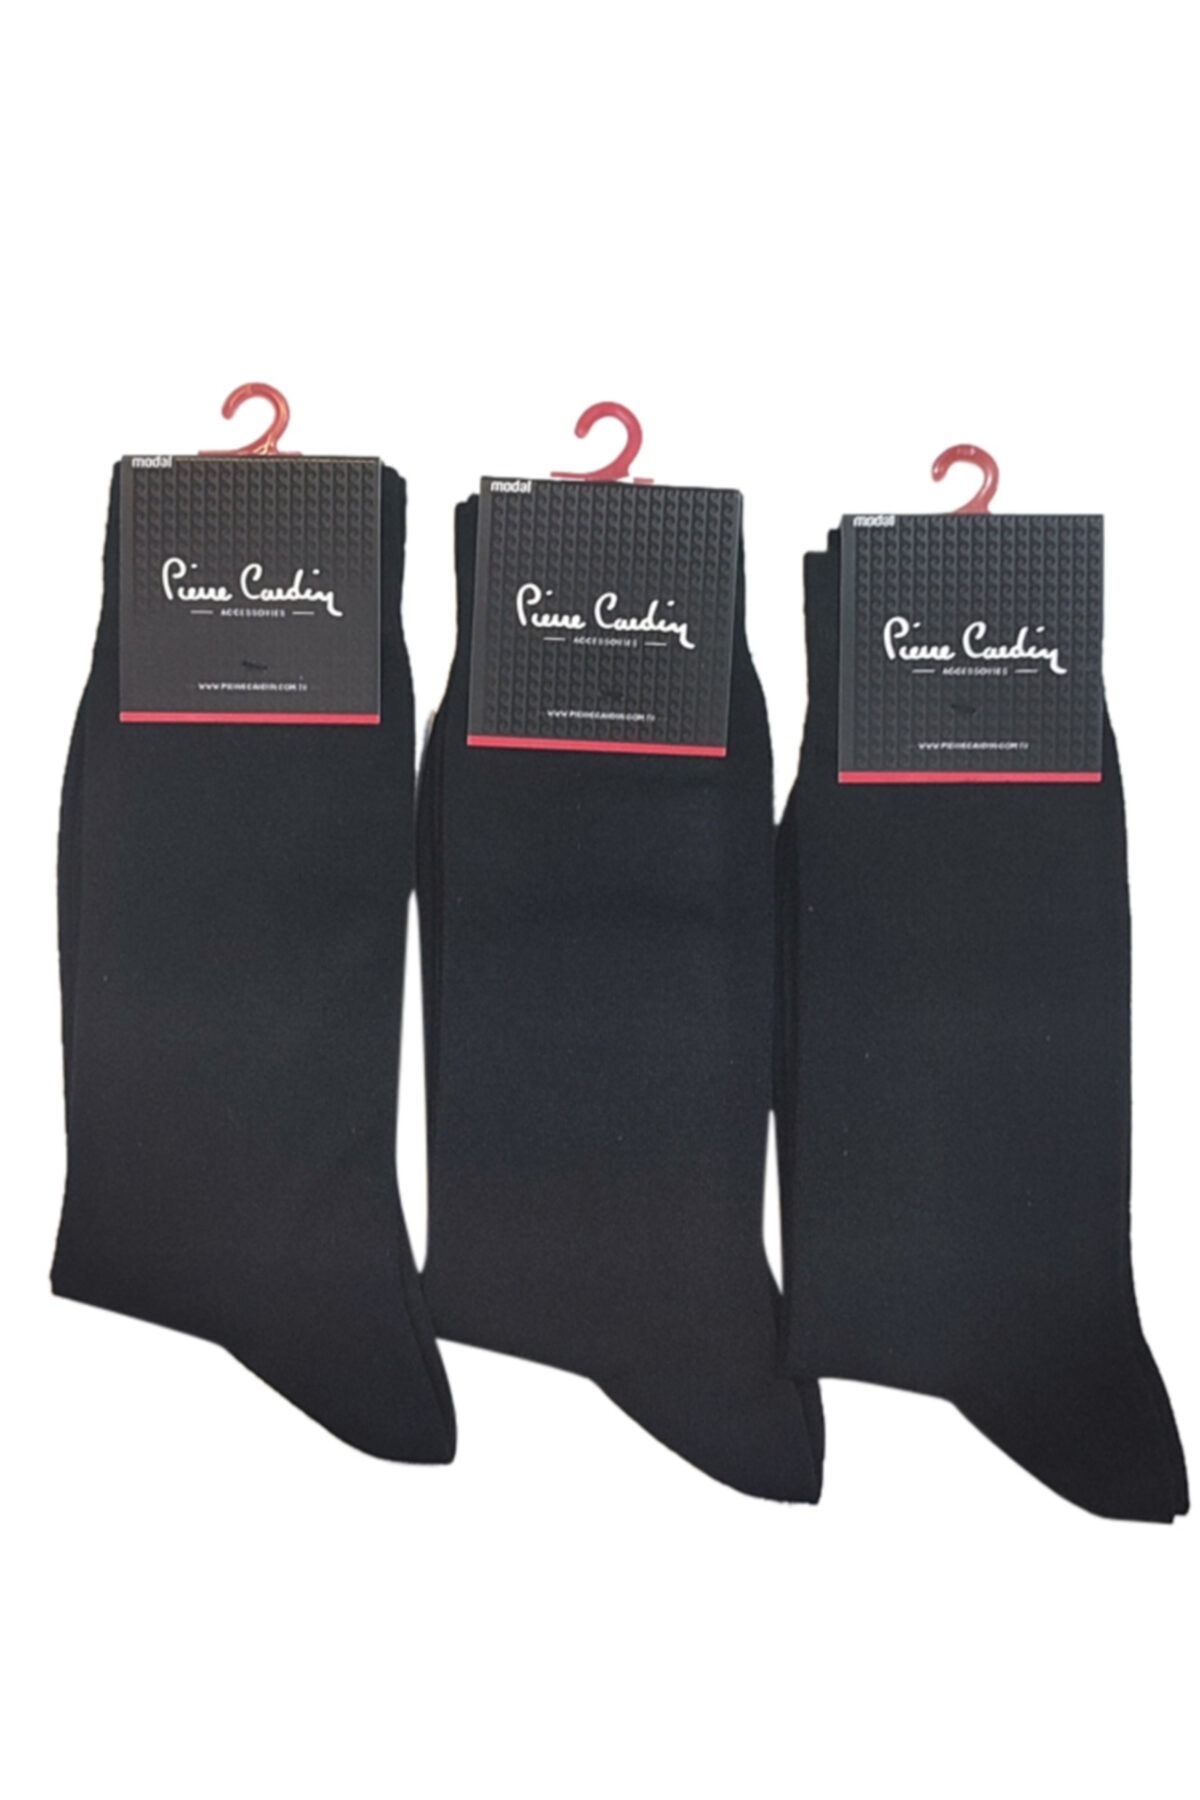 Pierre Cardin Flat Modal Erkek Çorap 3'lü Paket Siyah